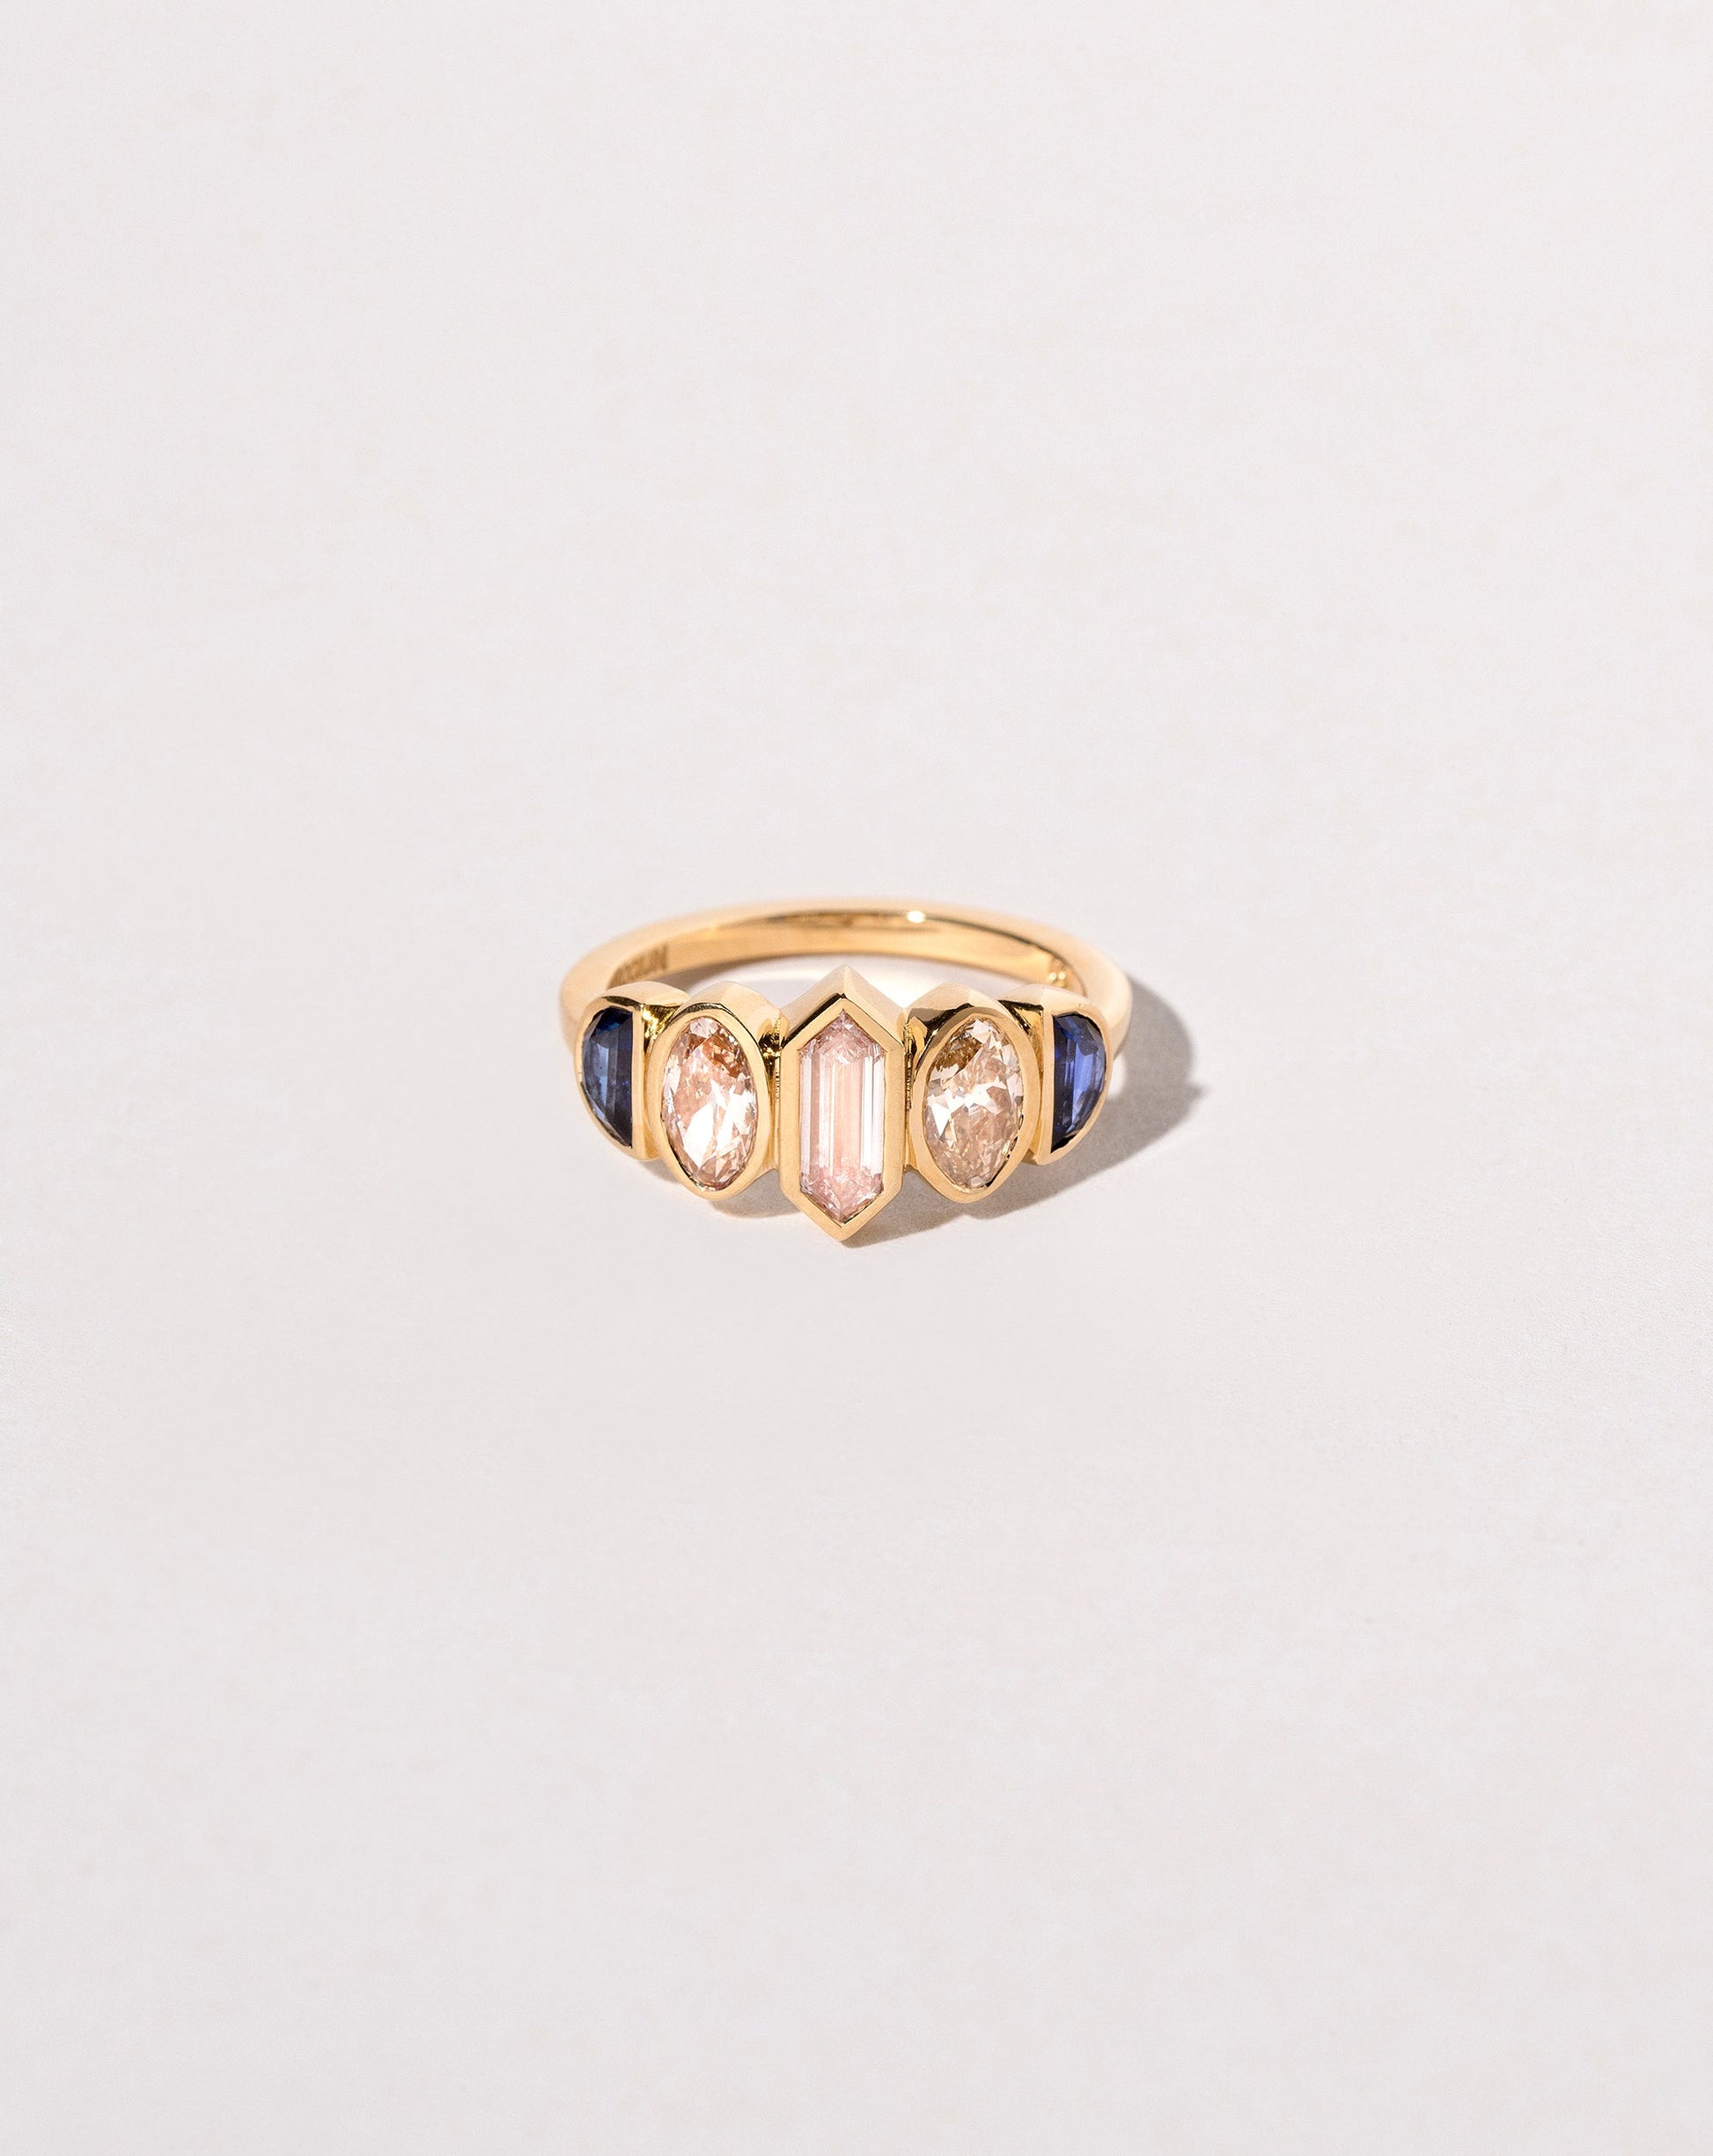  Larkspur Ring on light color background.